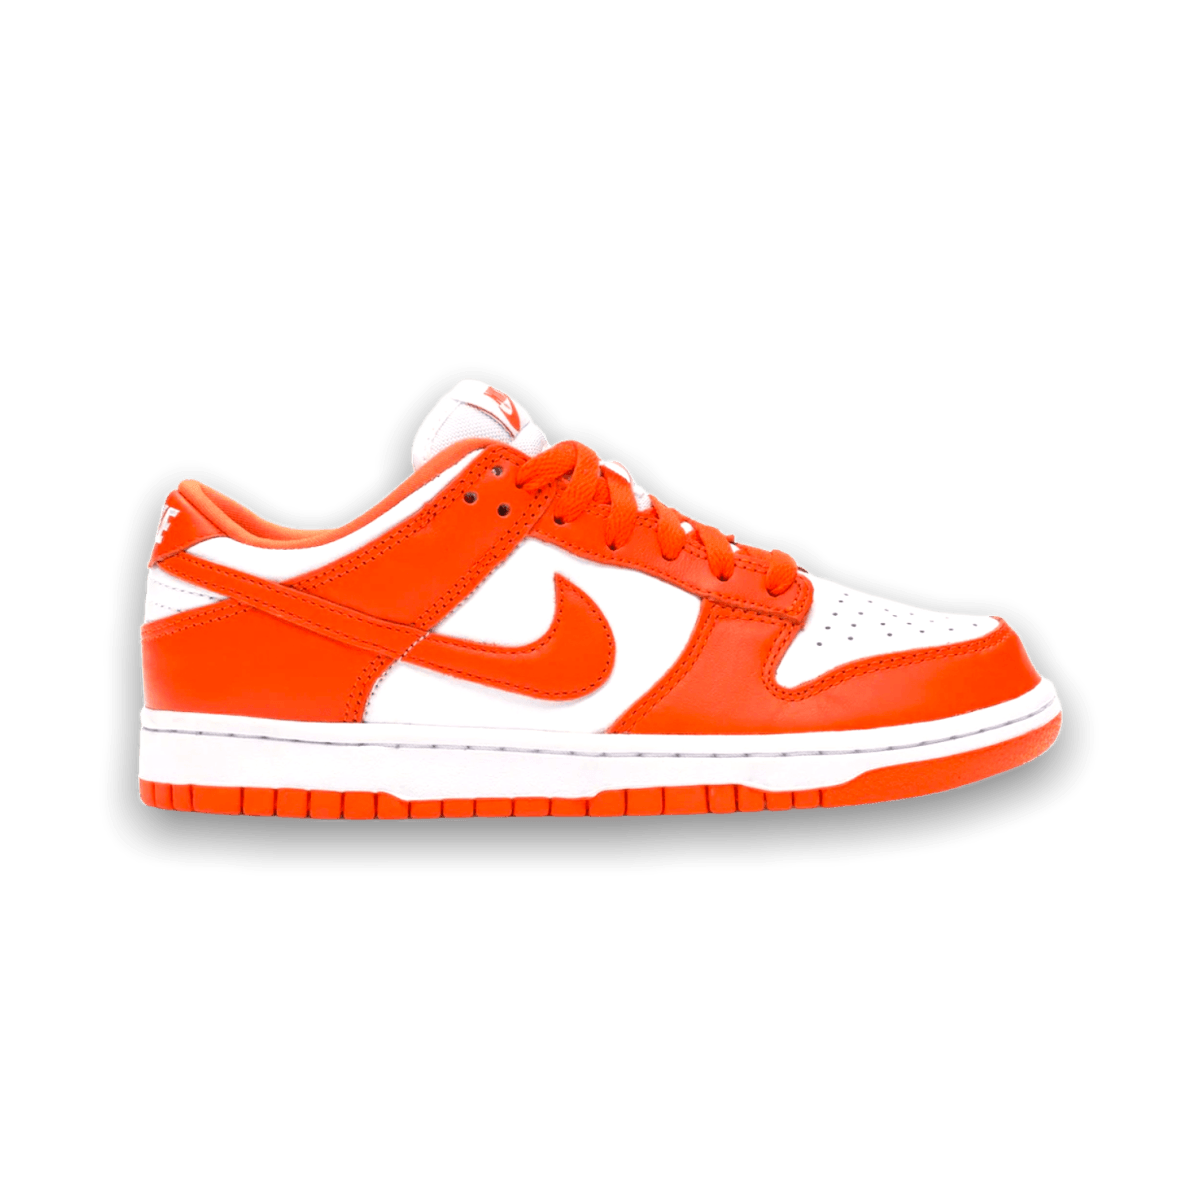 Dunk Low Retro SP 'Syracuse' Orange - Low Sneaker - Jawns on Fire Sneakers & Streetwear